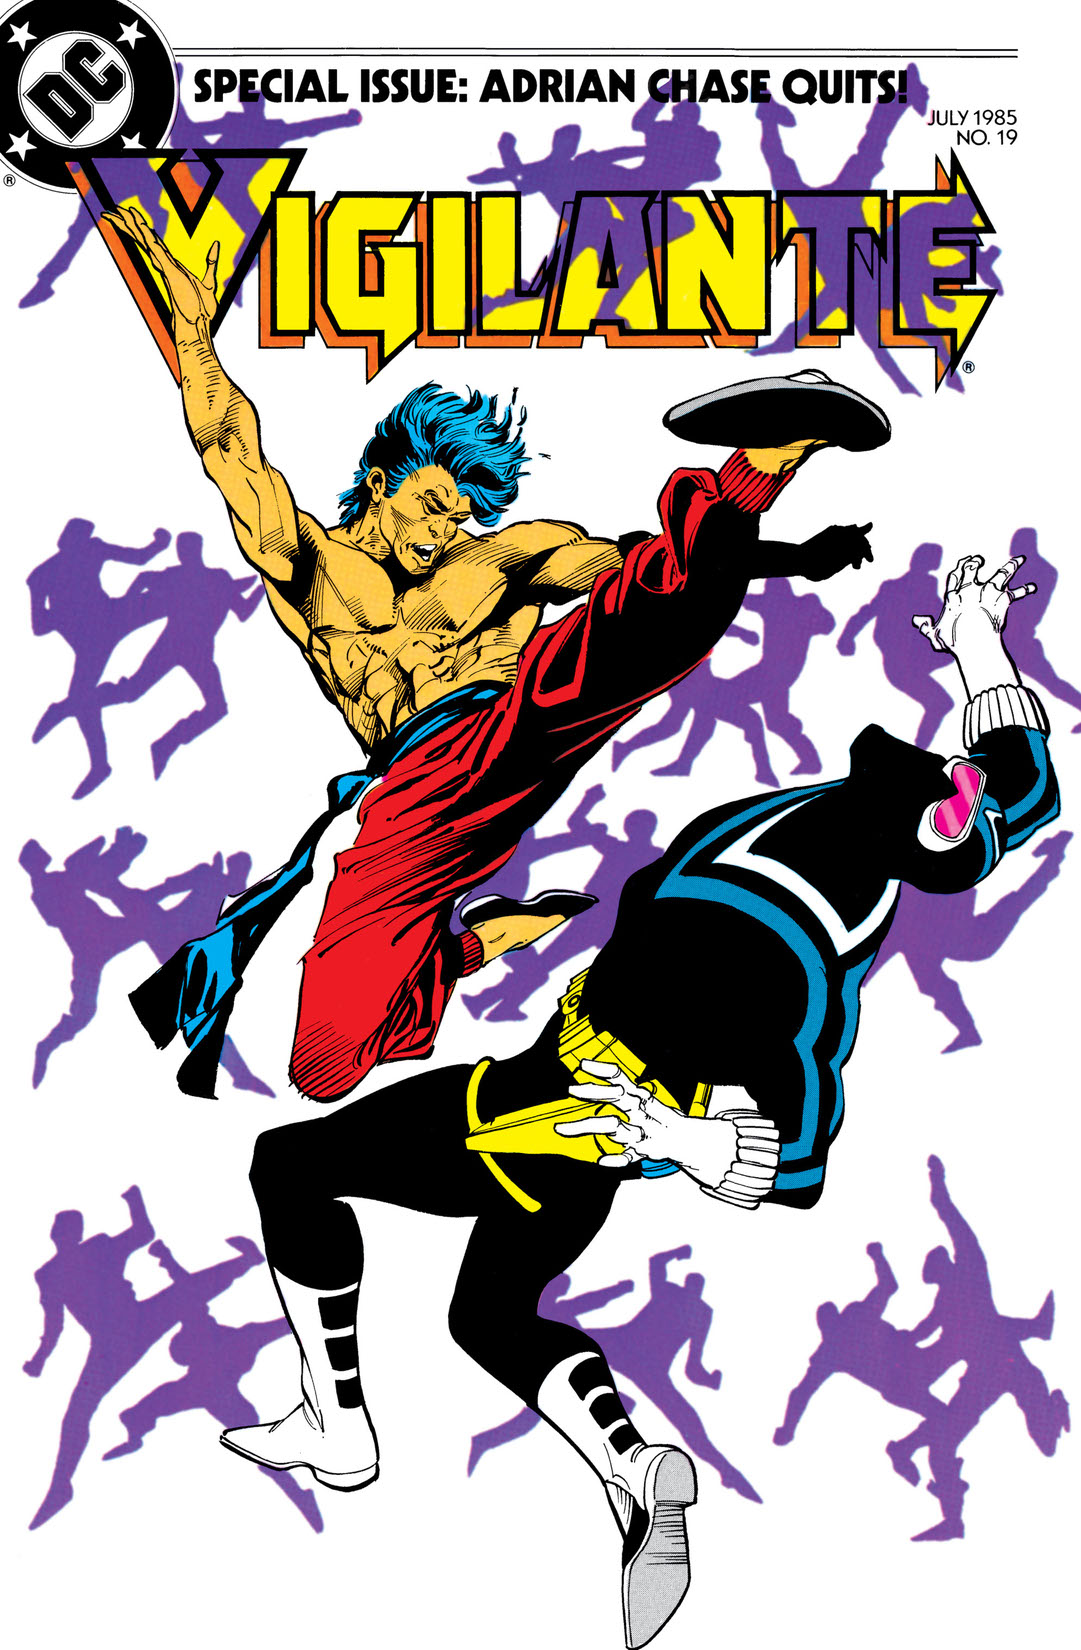 The Vigilante #19 preview images